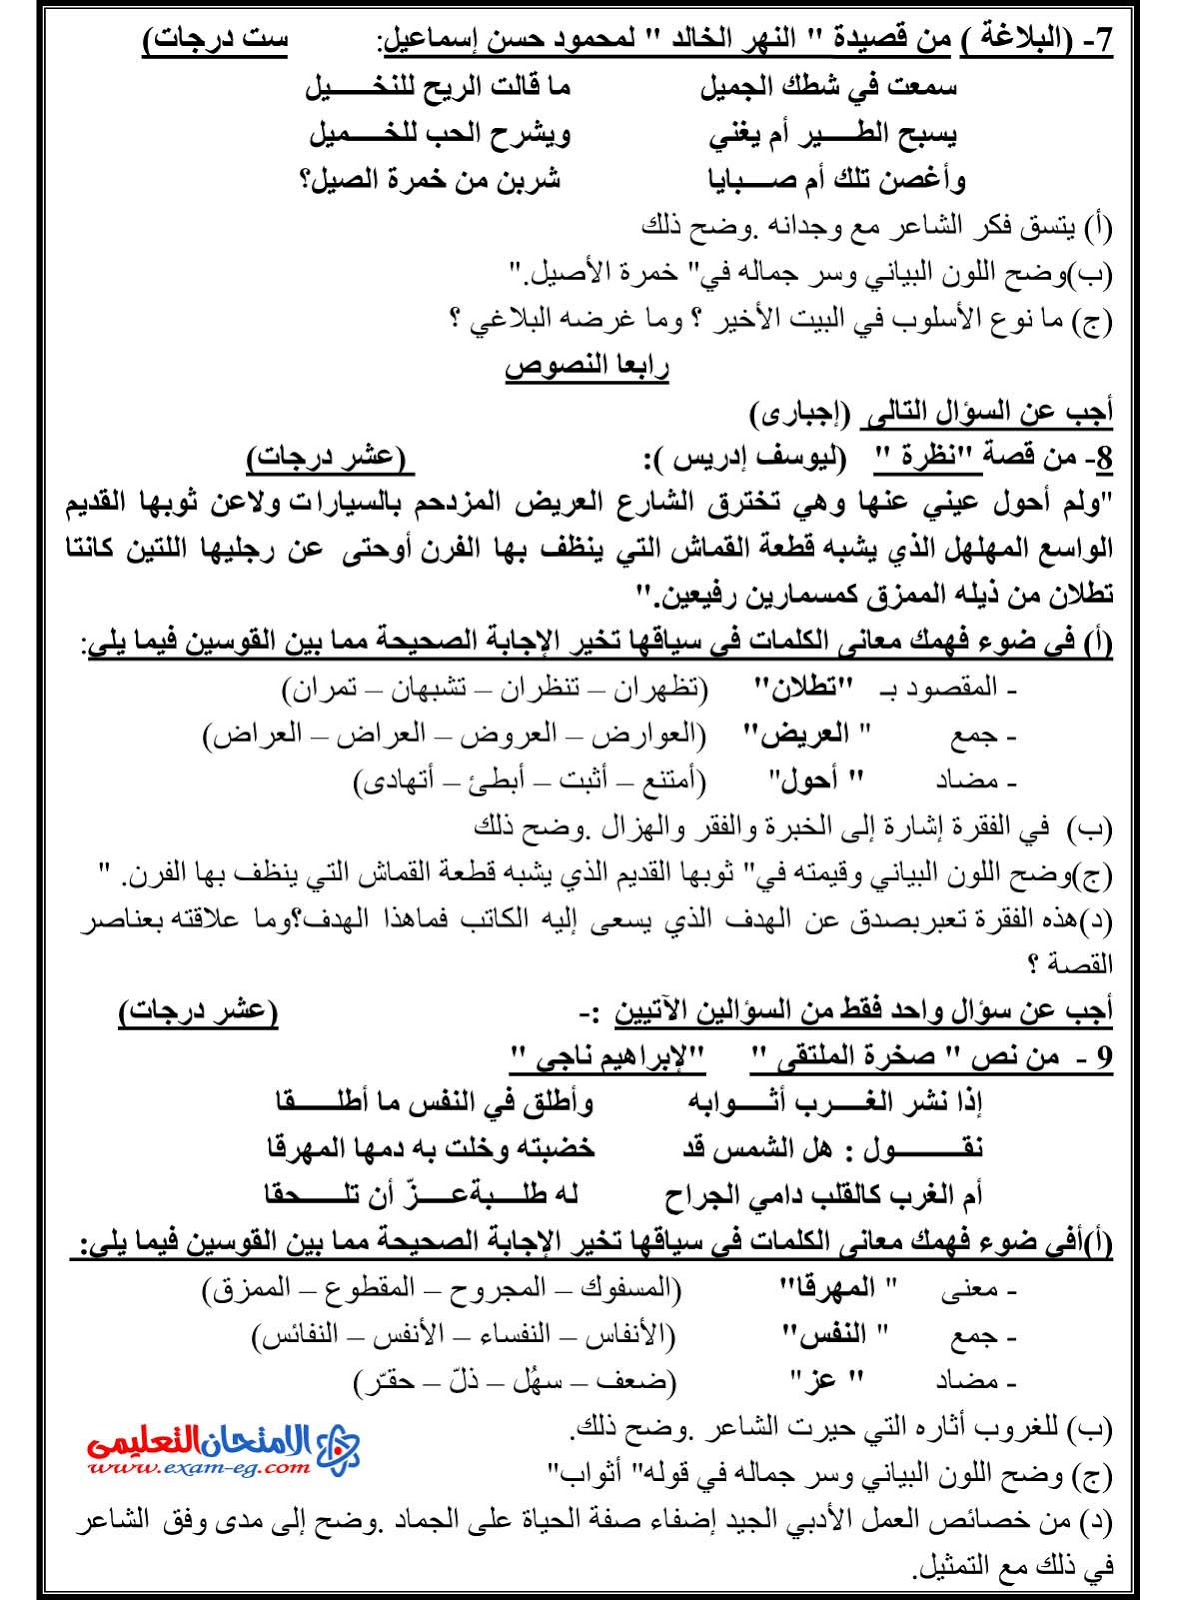 إمتحان السودان 2015 في لغة عربية